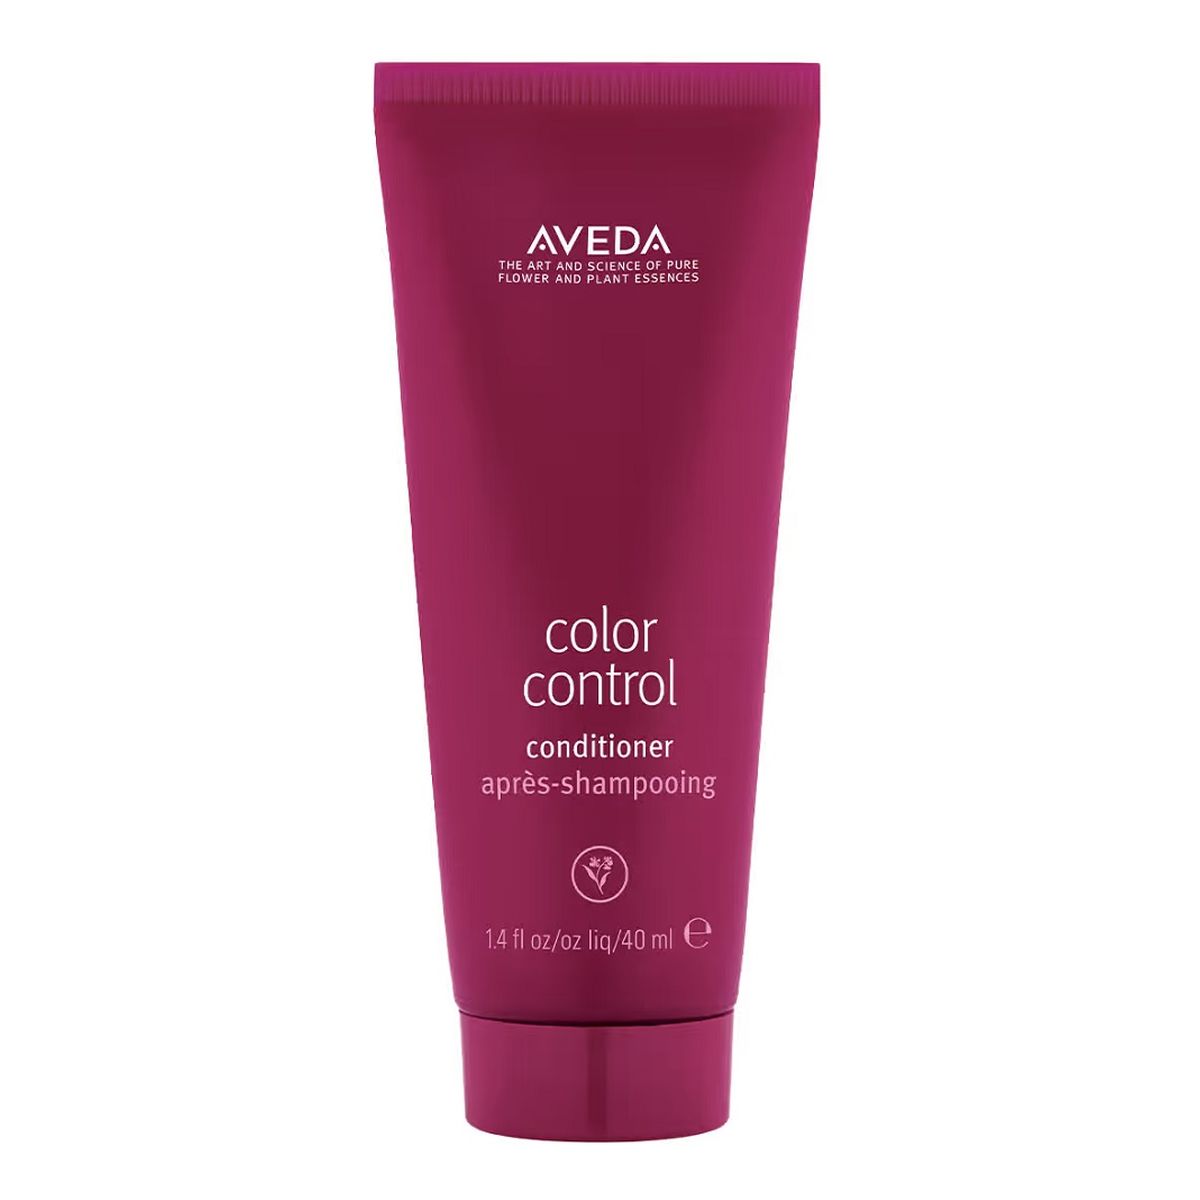 Aveda Color control conditioner odżywka do włosów farbowanych 40ml